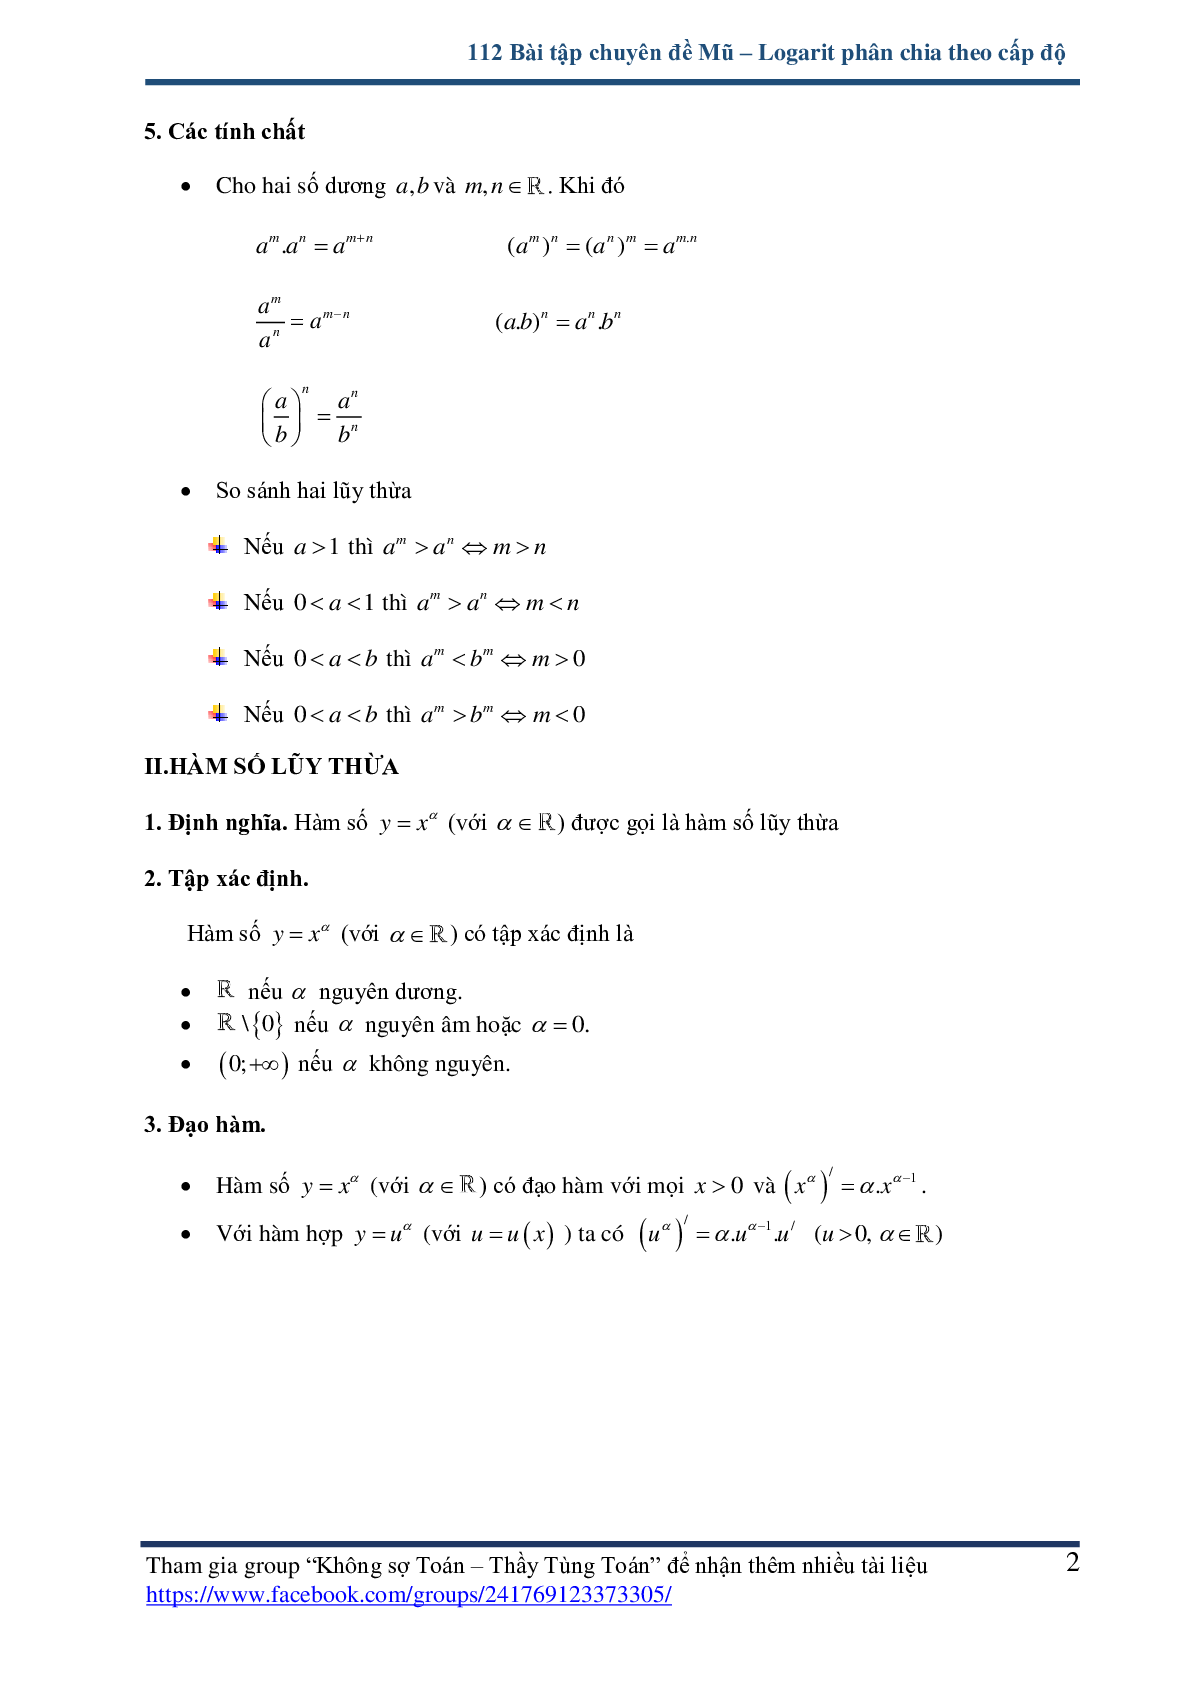 112 bài tập chuyên đề mũ và logarit - có lời giải chi tiết (trang 2)